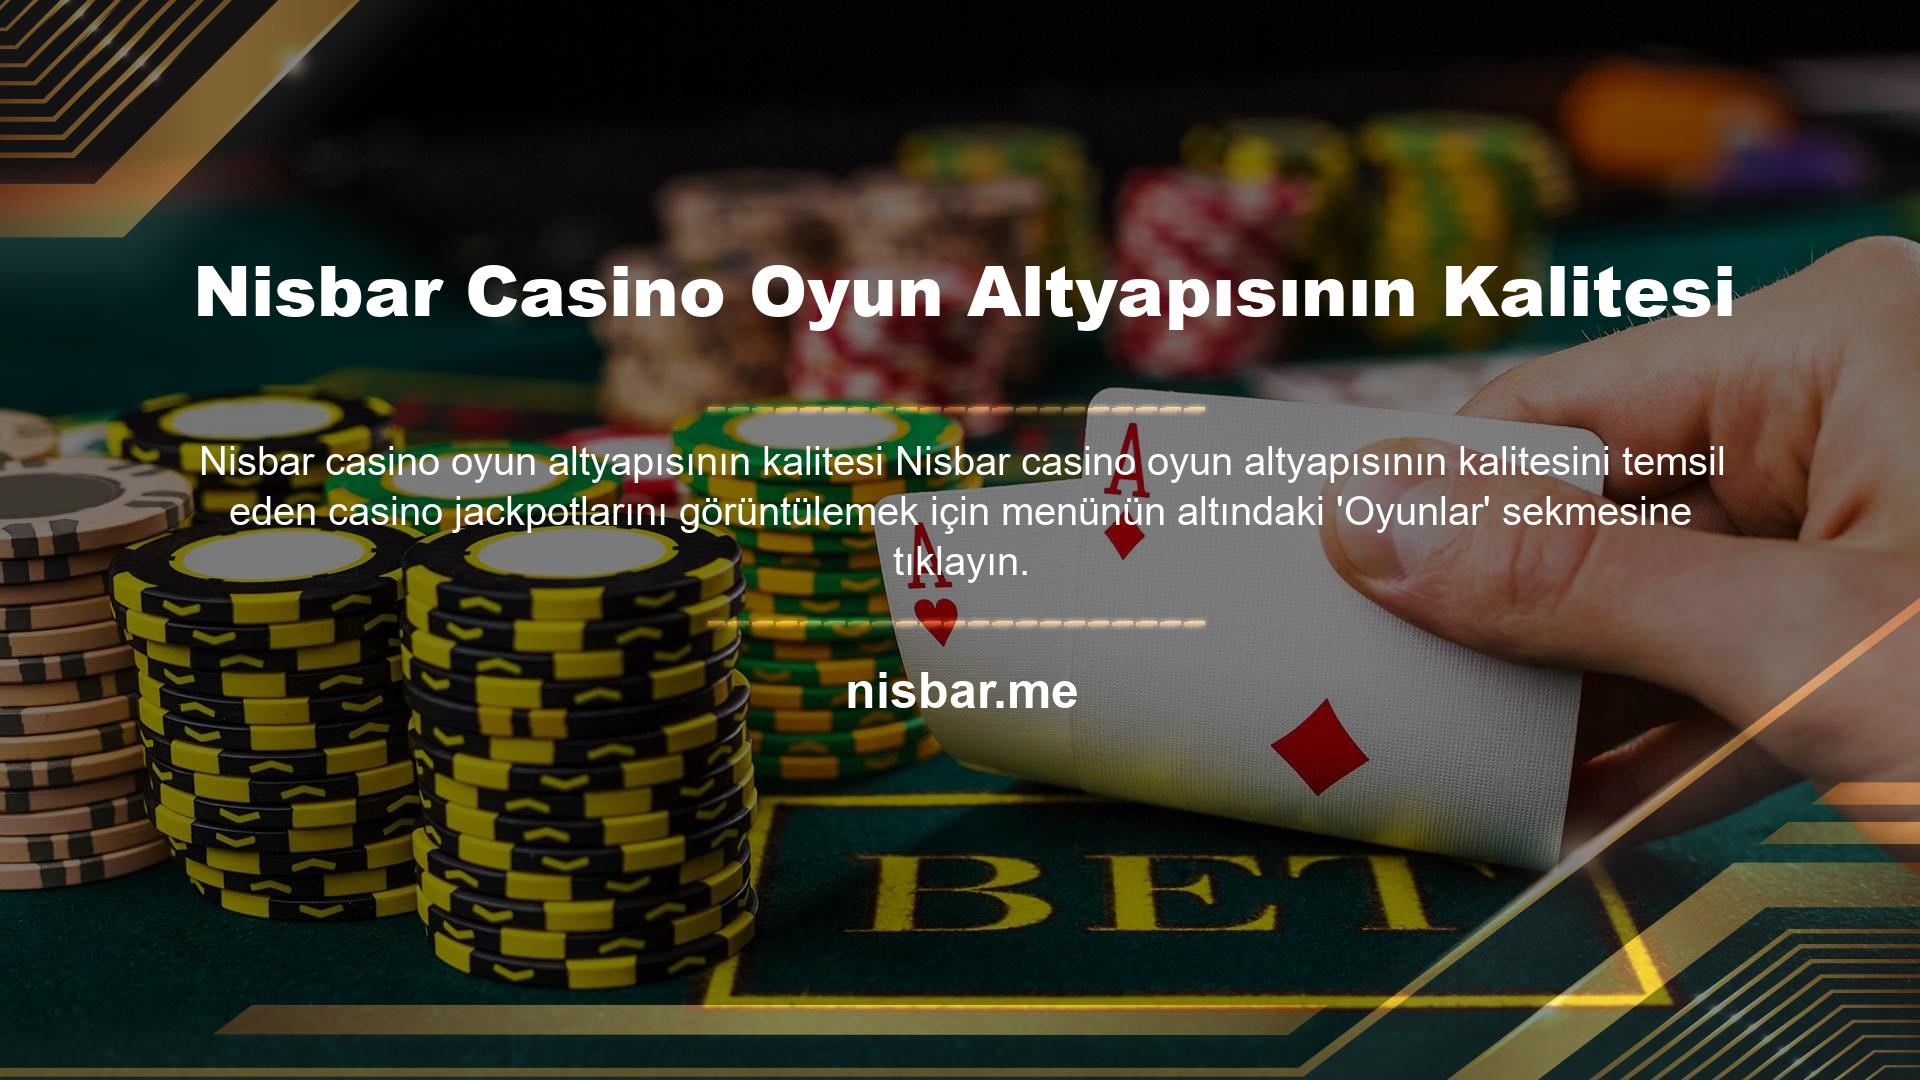 Nisbar Casino Oyun Altyapısının Kalitesi